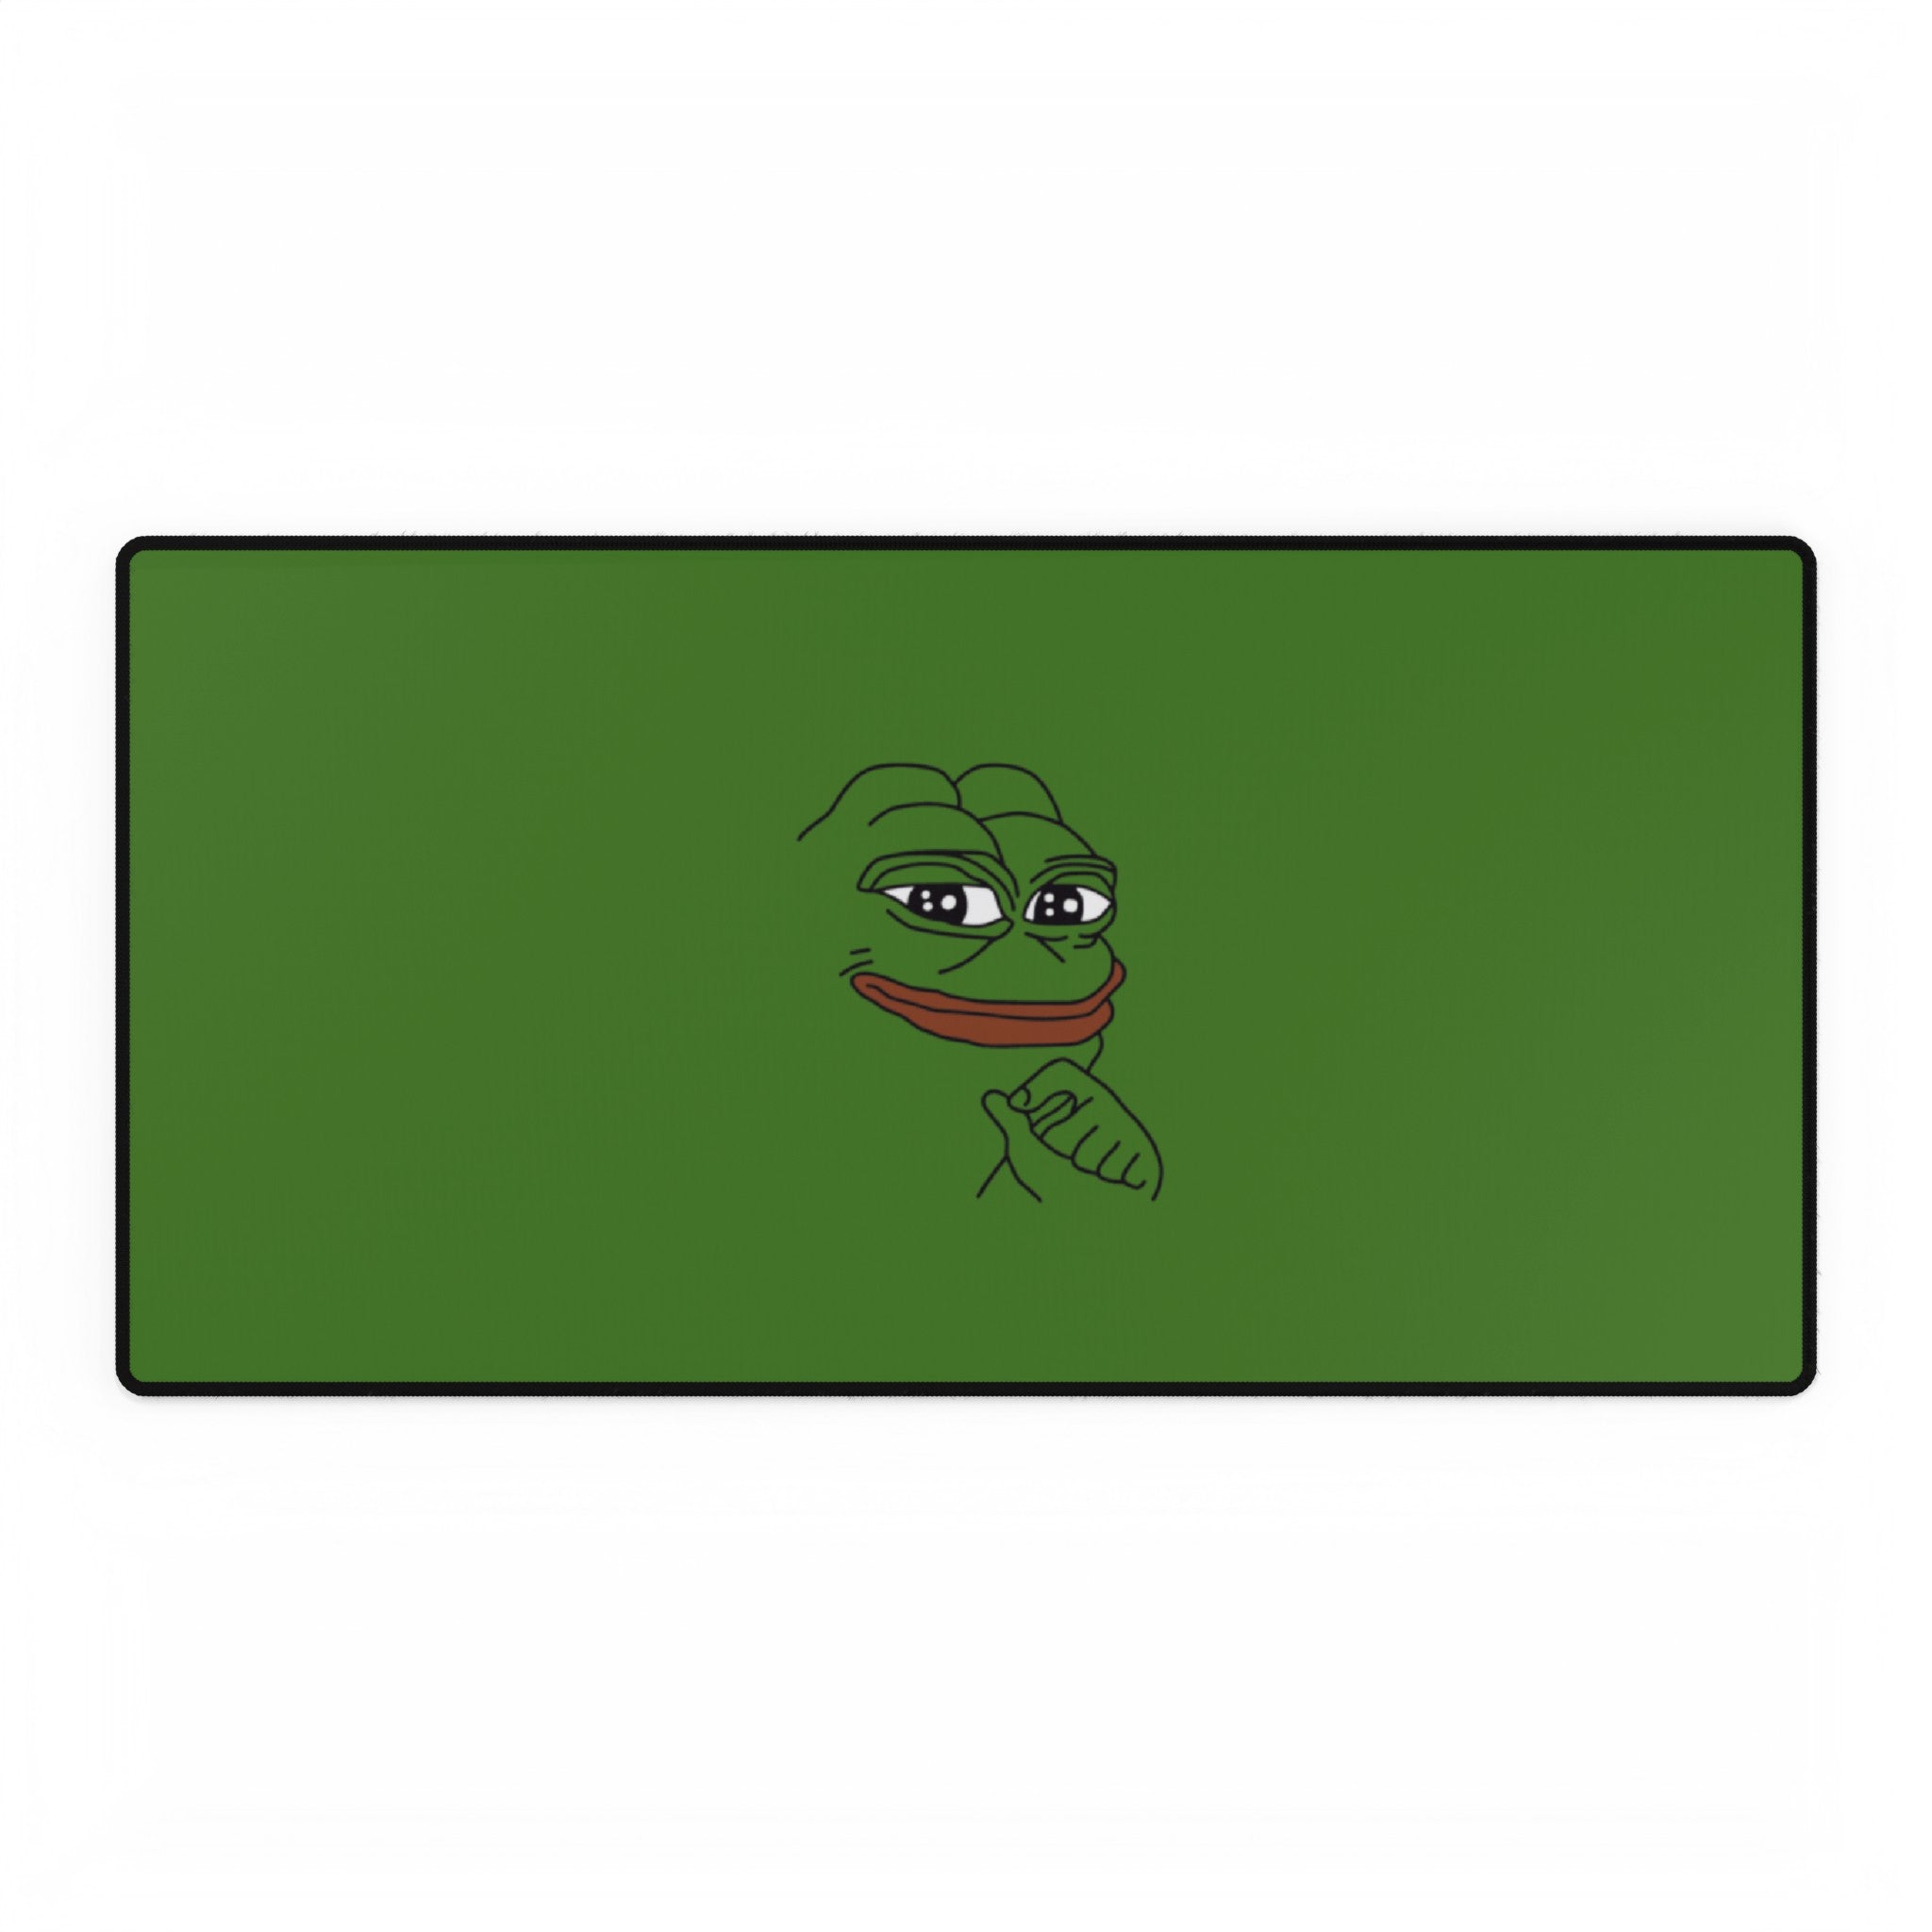 PEPE frog meme desk mat mousepad